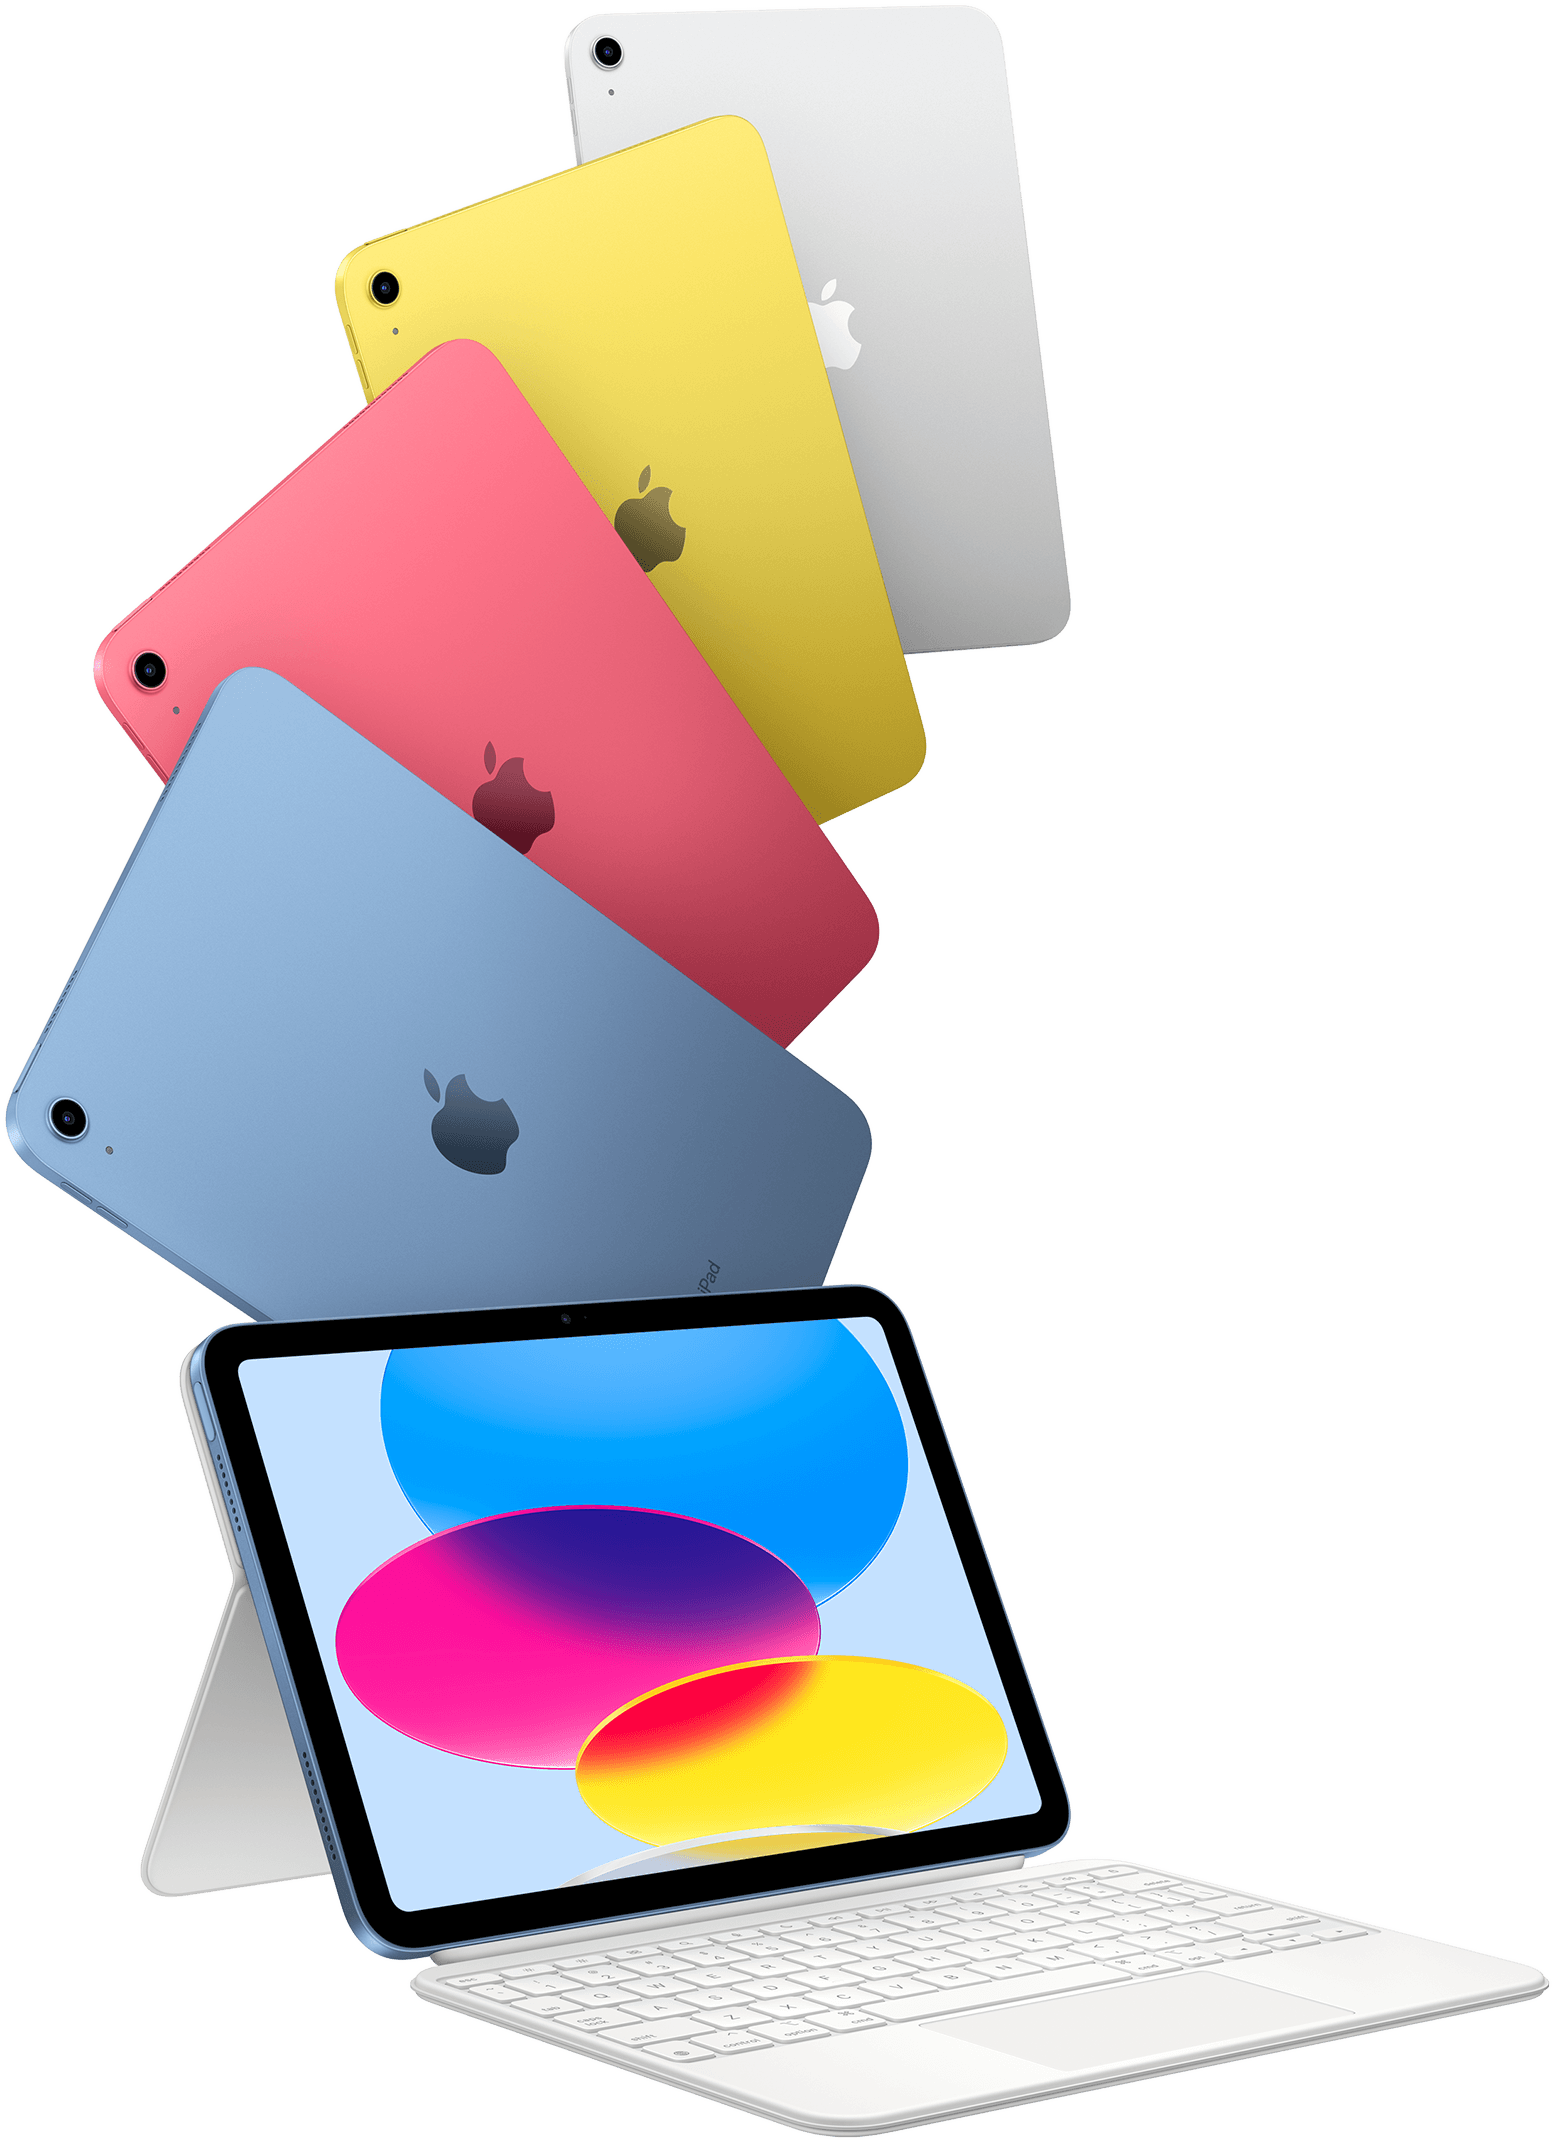 Modelos do iPad em azul, rosa, amarelo e prateado. Um iPad está conectado ao Magic Keyboard Folio.